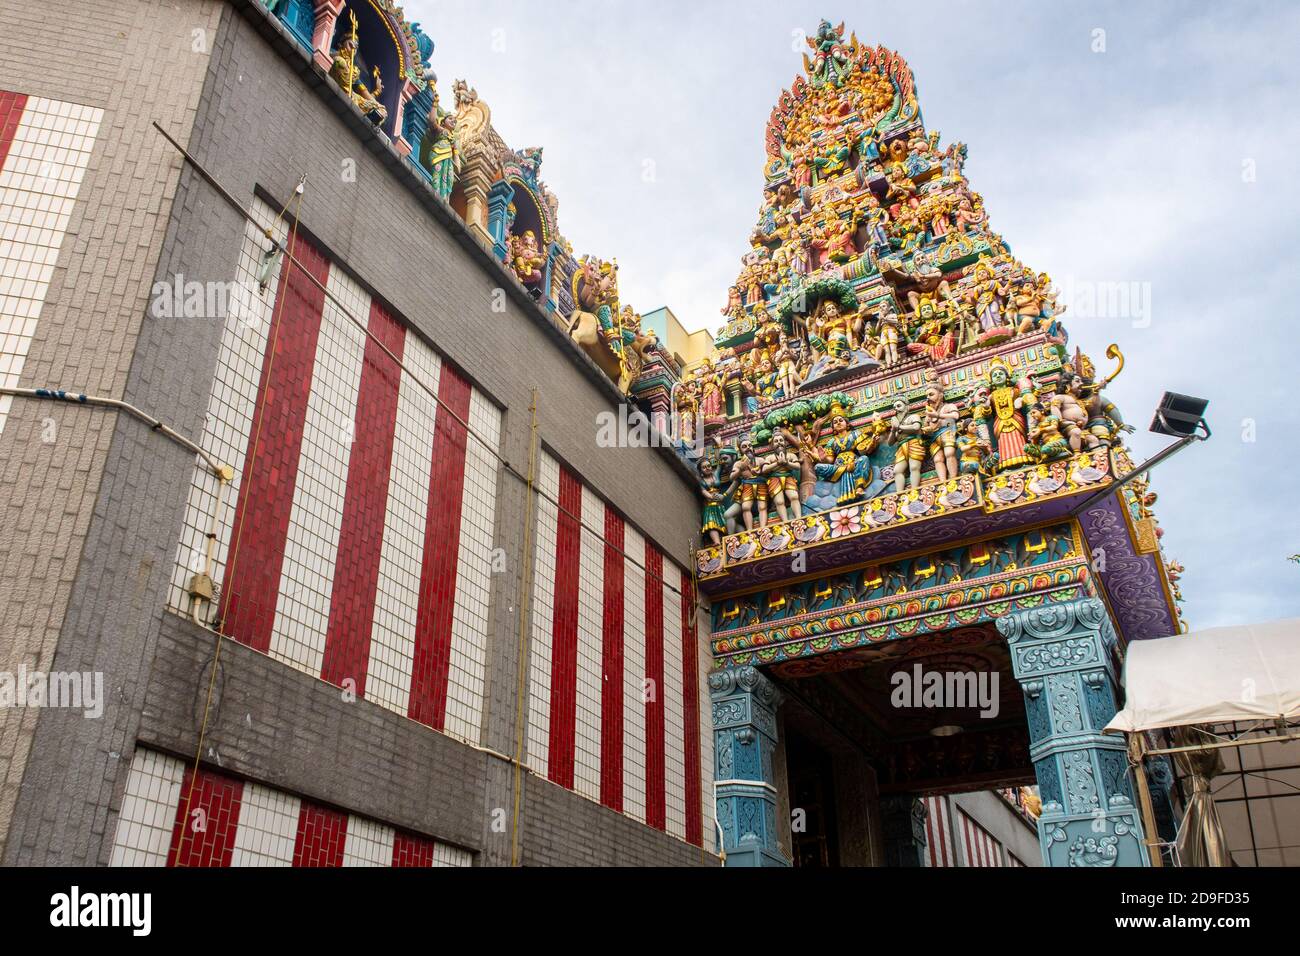 Singapur, 21/01/19. Sri Veeramakaliamman Templo dedicado a la diosa hindú Kali, con ricamente decorado tallado techo colorido con dioses hindúes. Foto de stock